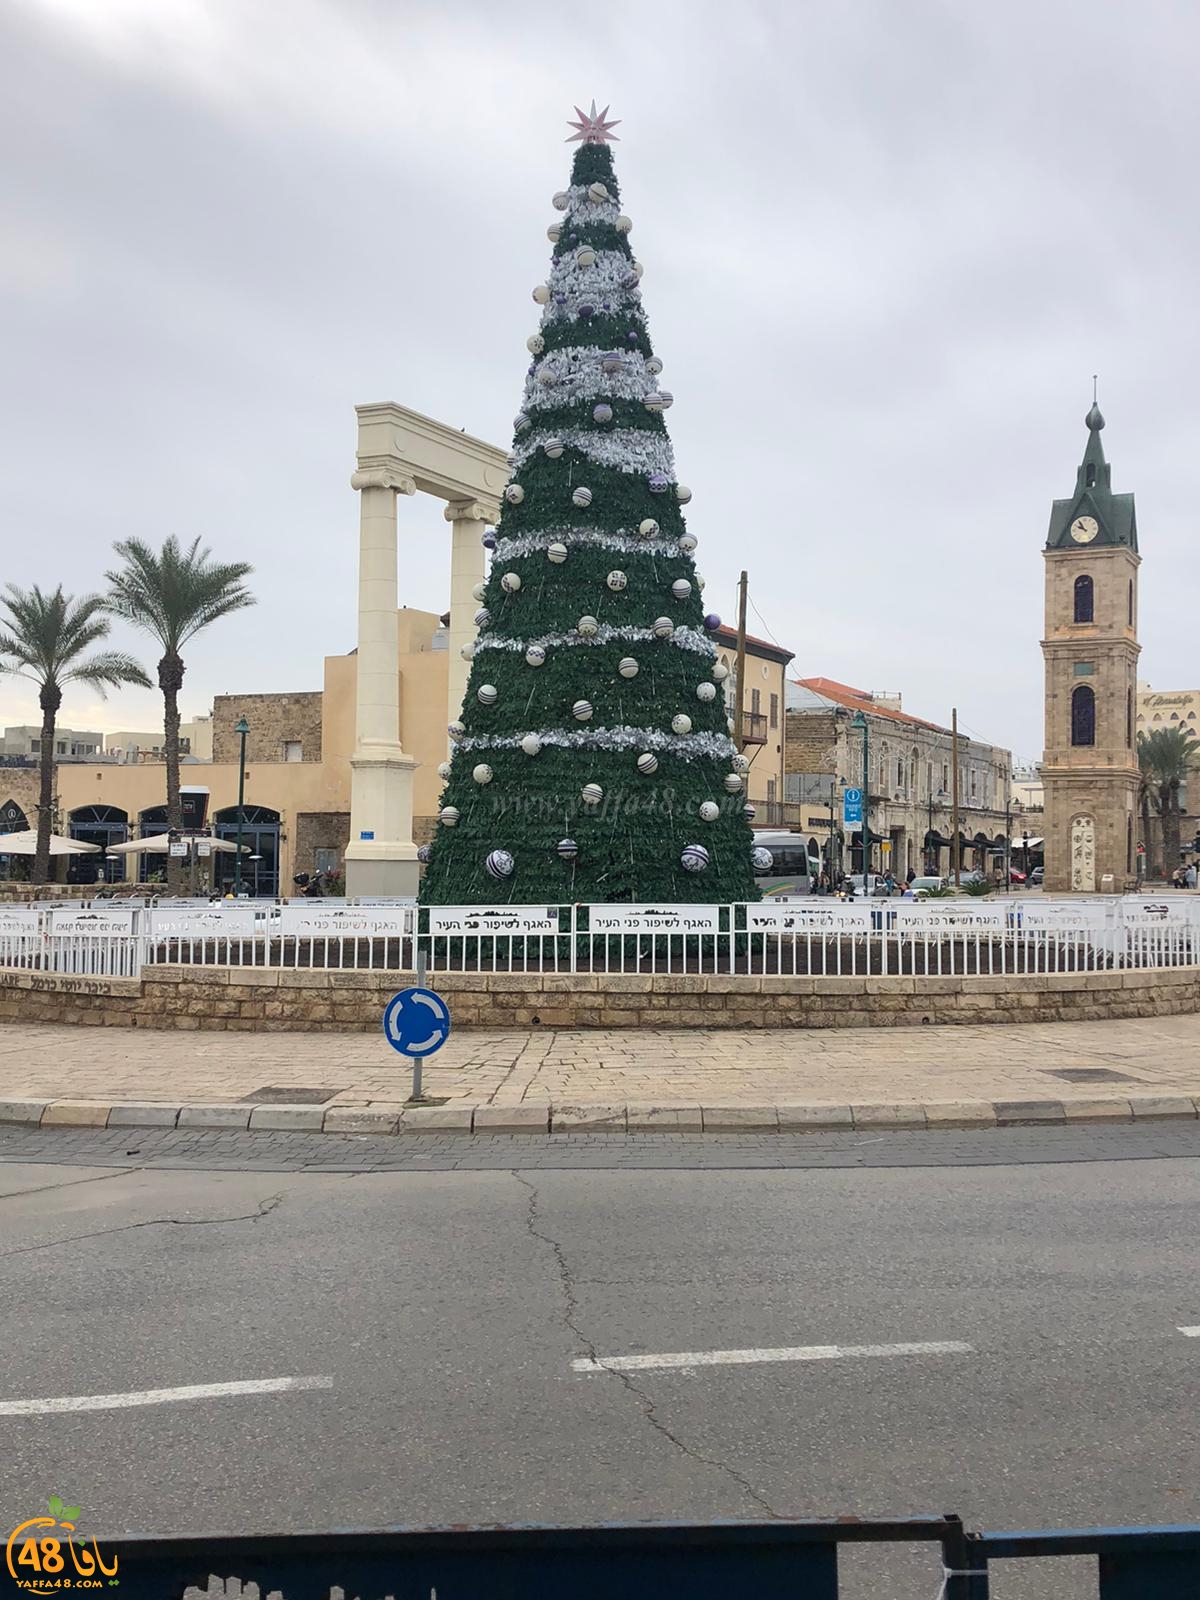  صور: استعدادات لاضاءة شجرة عيد الميلاد في مدينة يافا الأحد المقبل